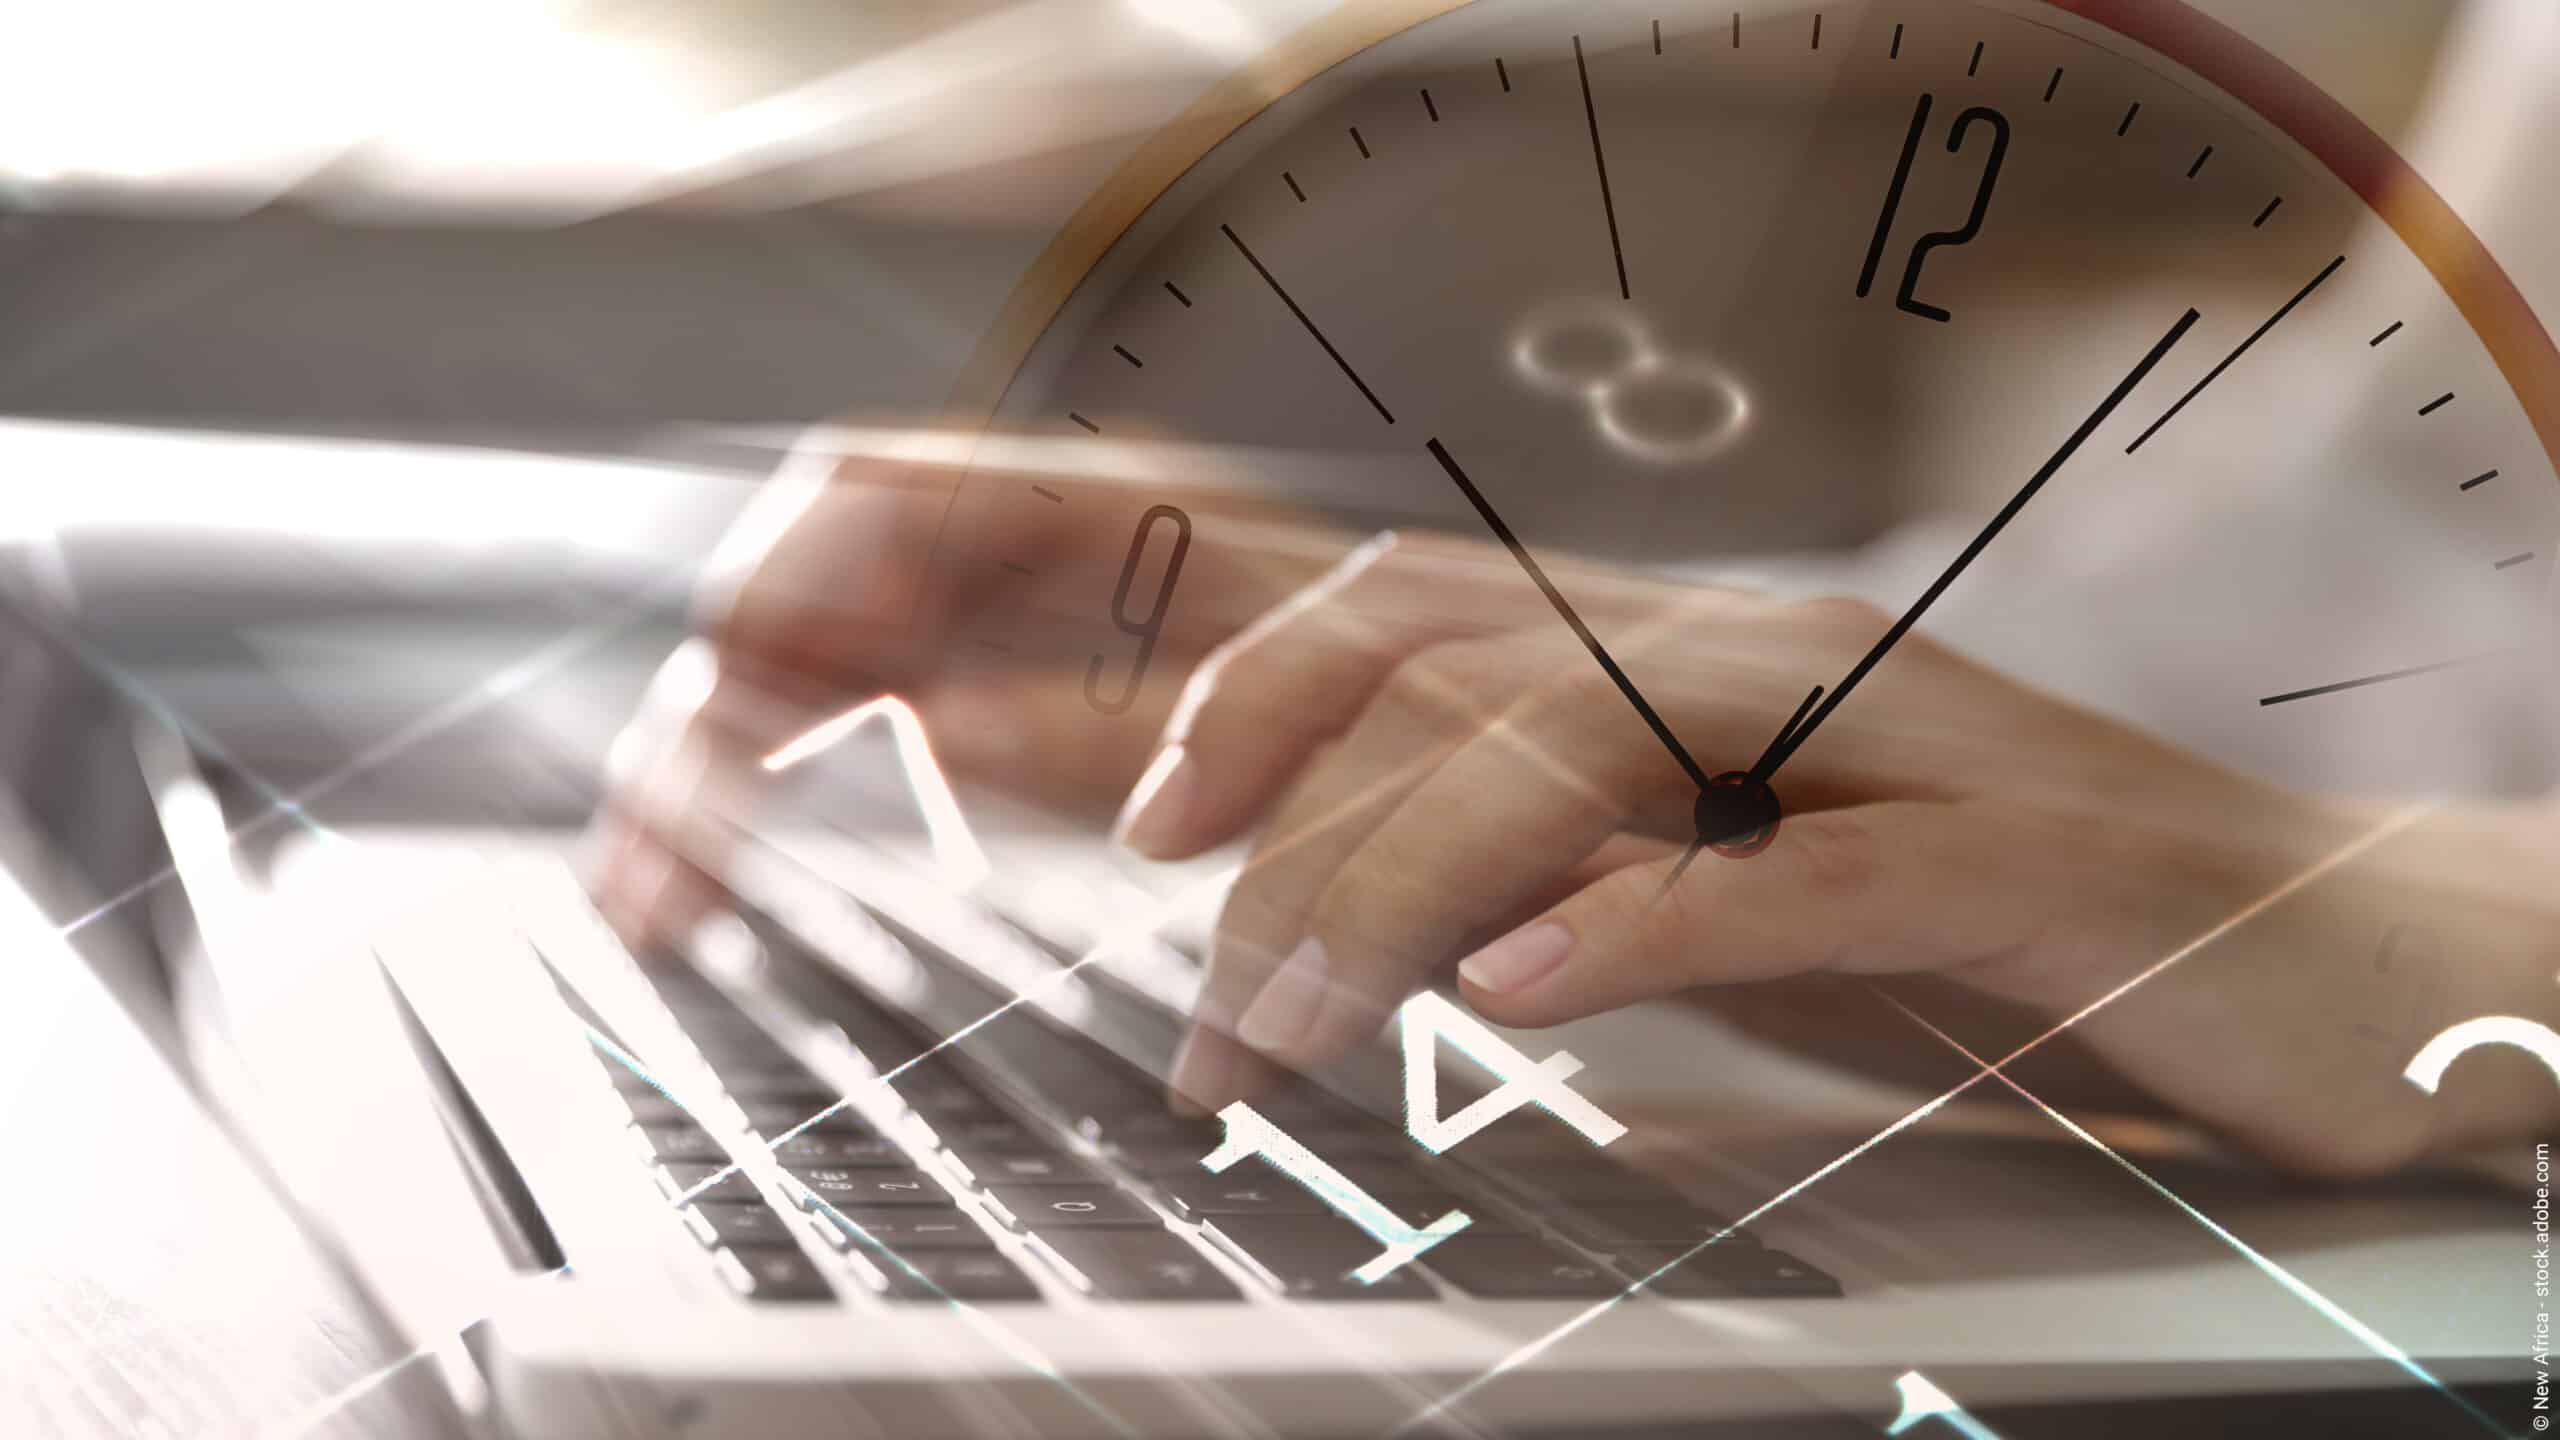 Arbeitszeitverkürzung: Eine Frau die an einem Laptop arbeitet, ein Kalender und eine Uhr sollen die Arbeitszeit darstellen.